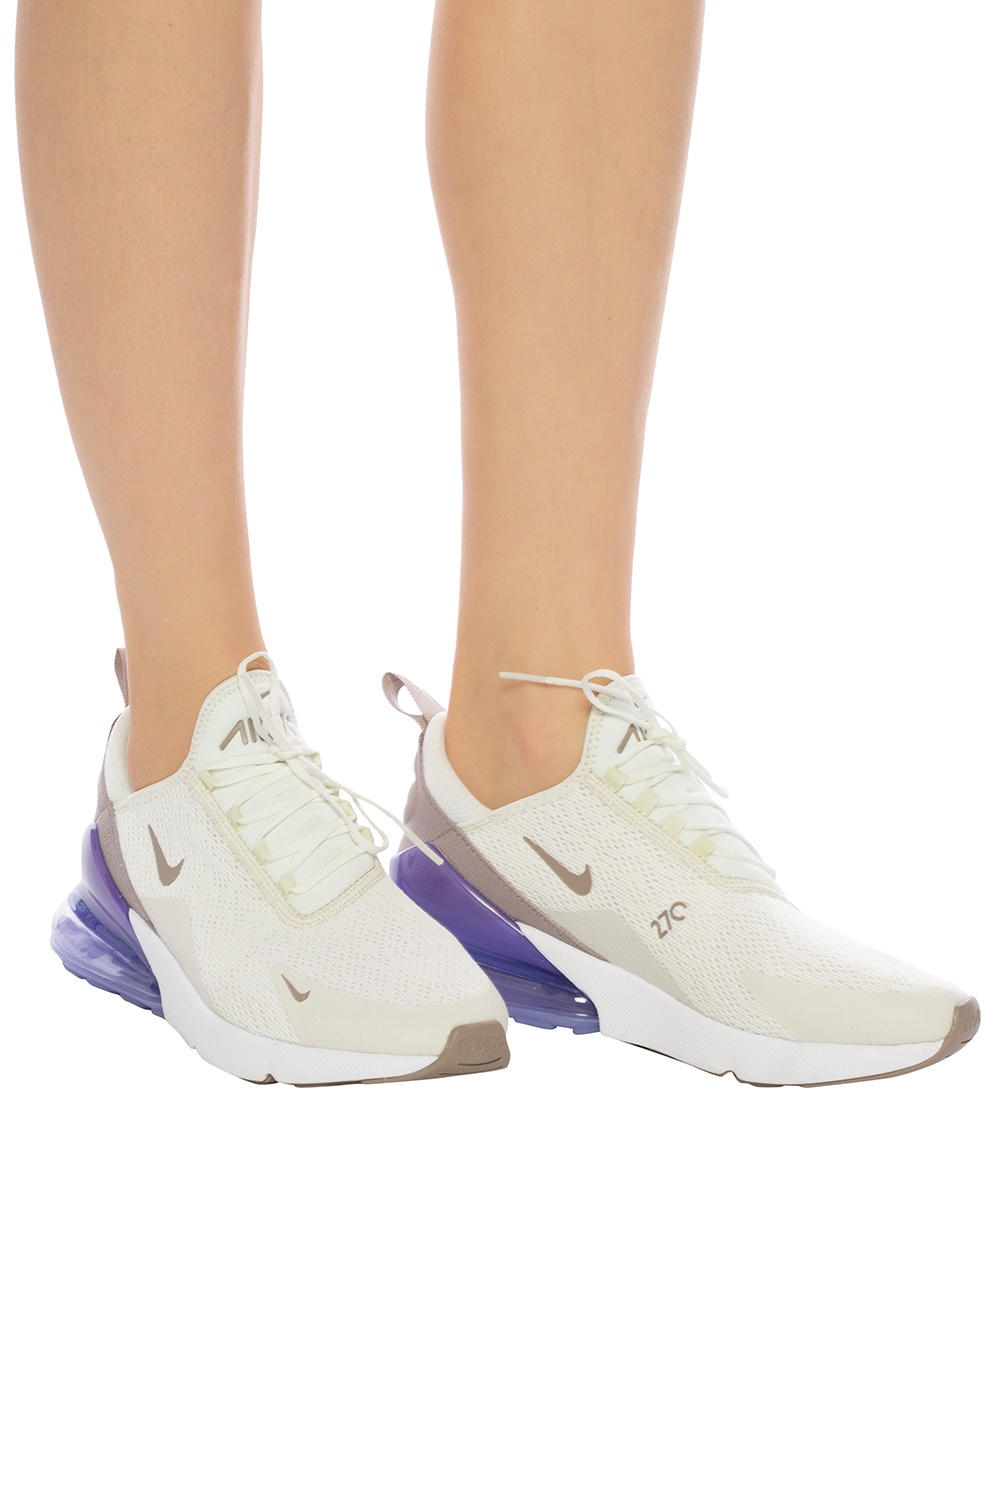 Nike Air Max 270 Shoes Wmn (sail/pumice space purple white)